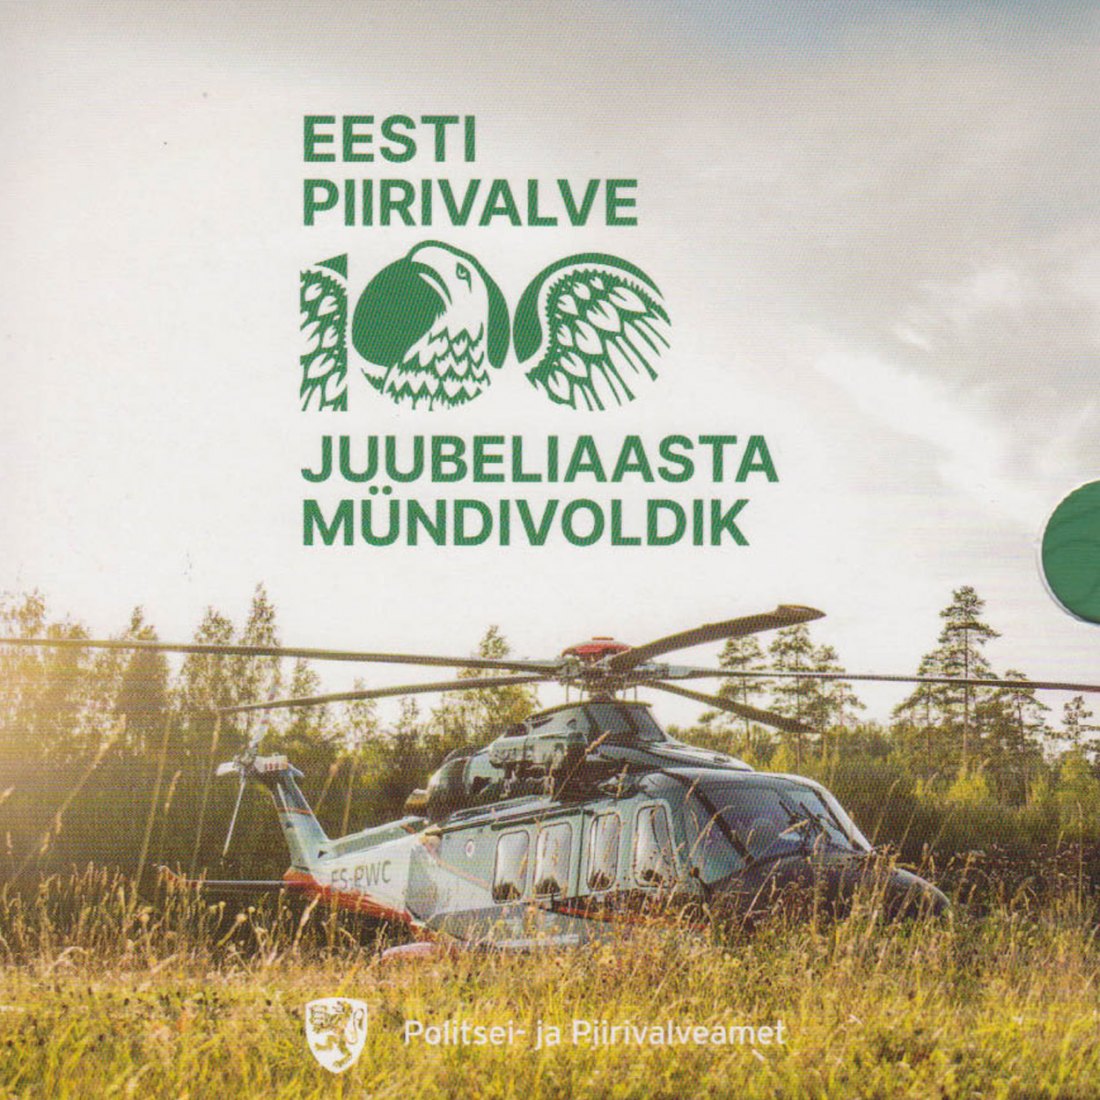  Offiz. Euro KMS Estland *100 Jahre estnischer Grenzschutz* 2022 nur 7.500 Stück!   